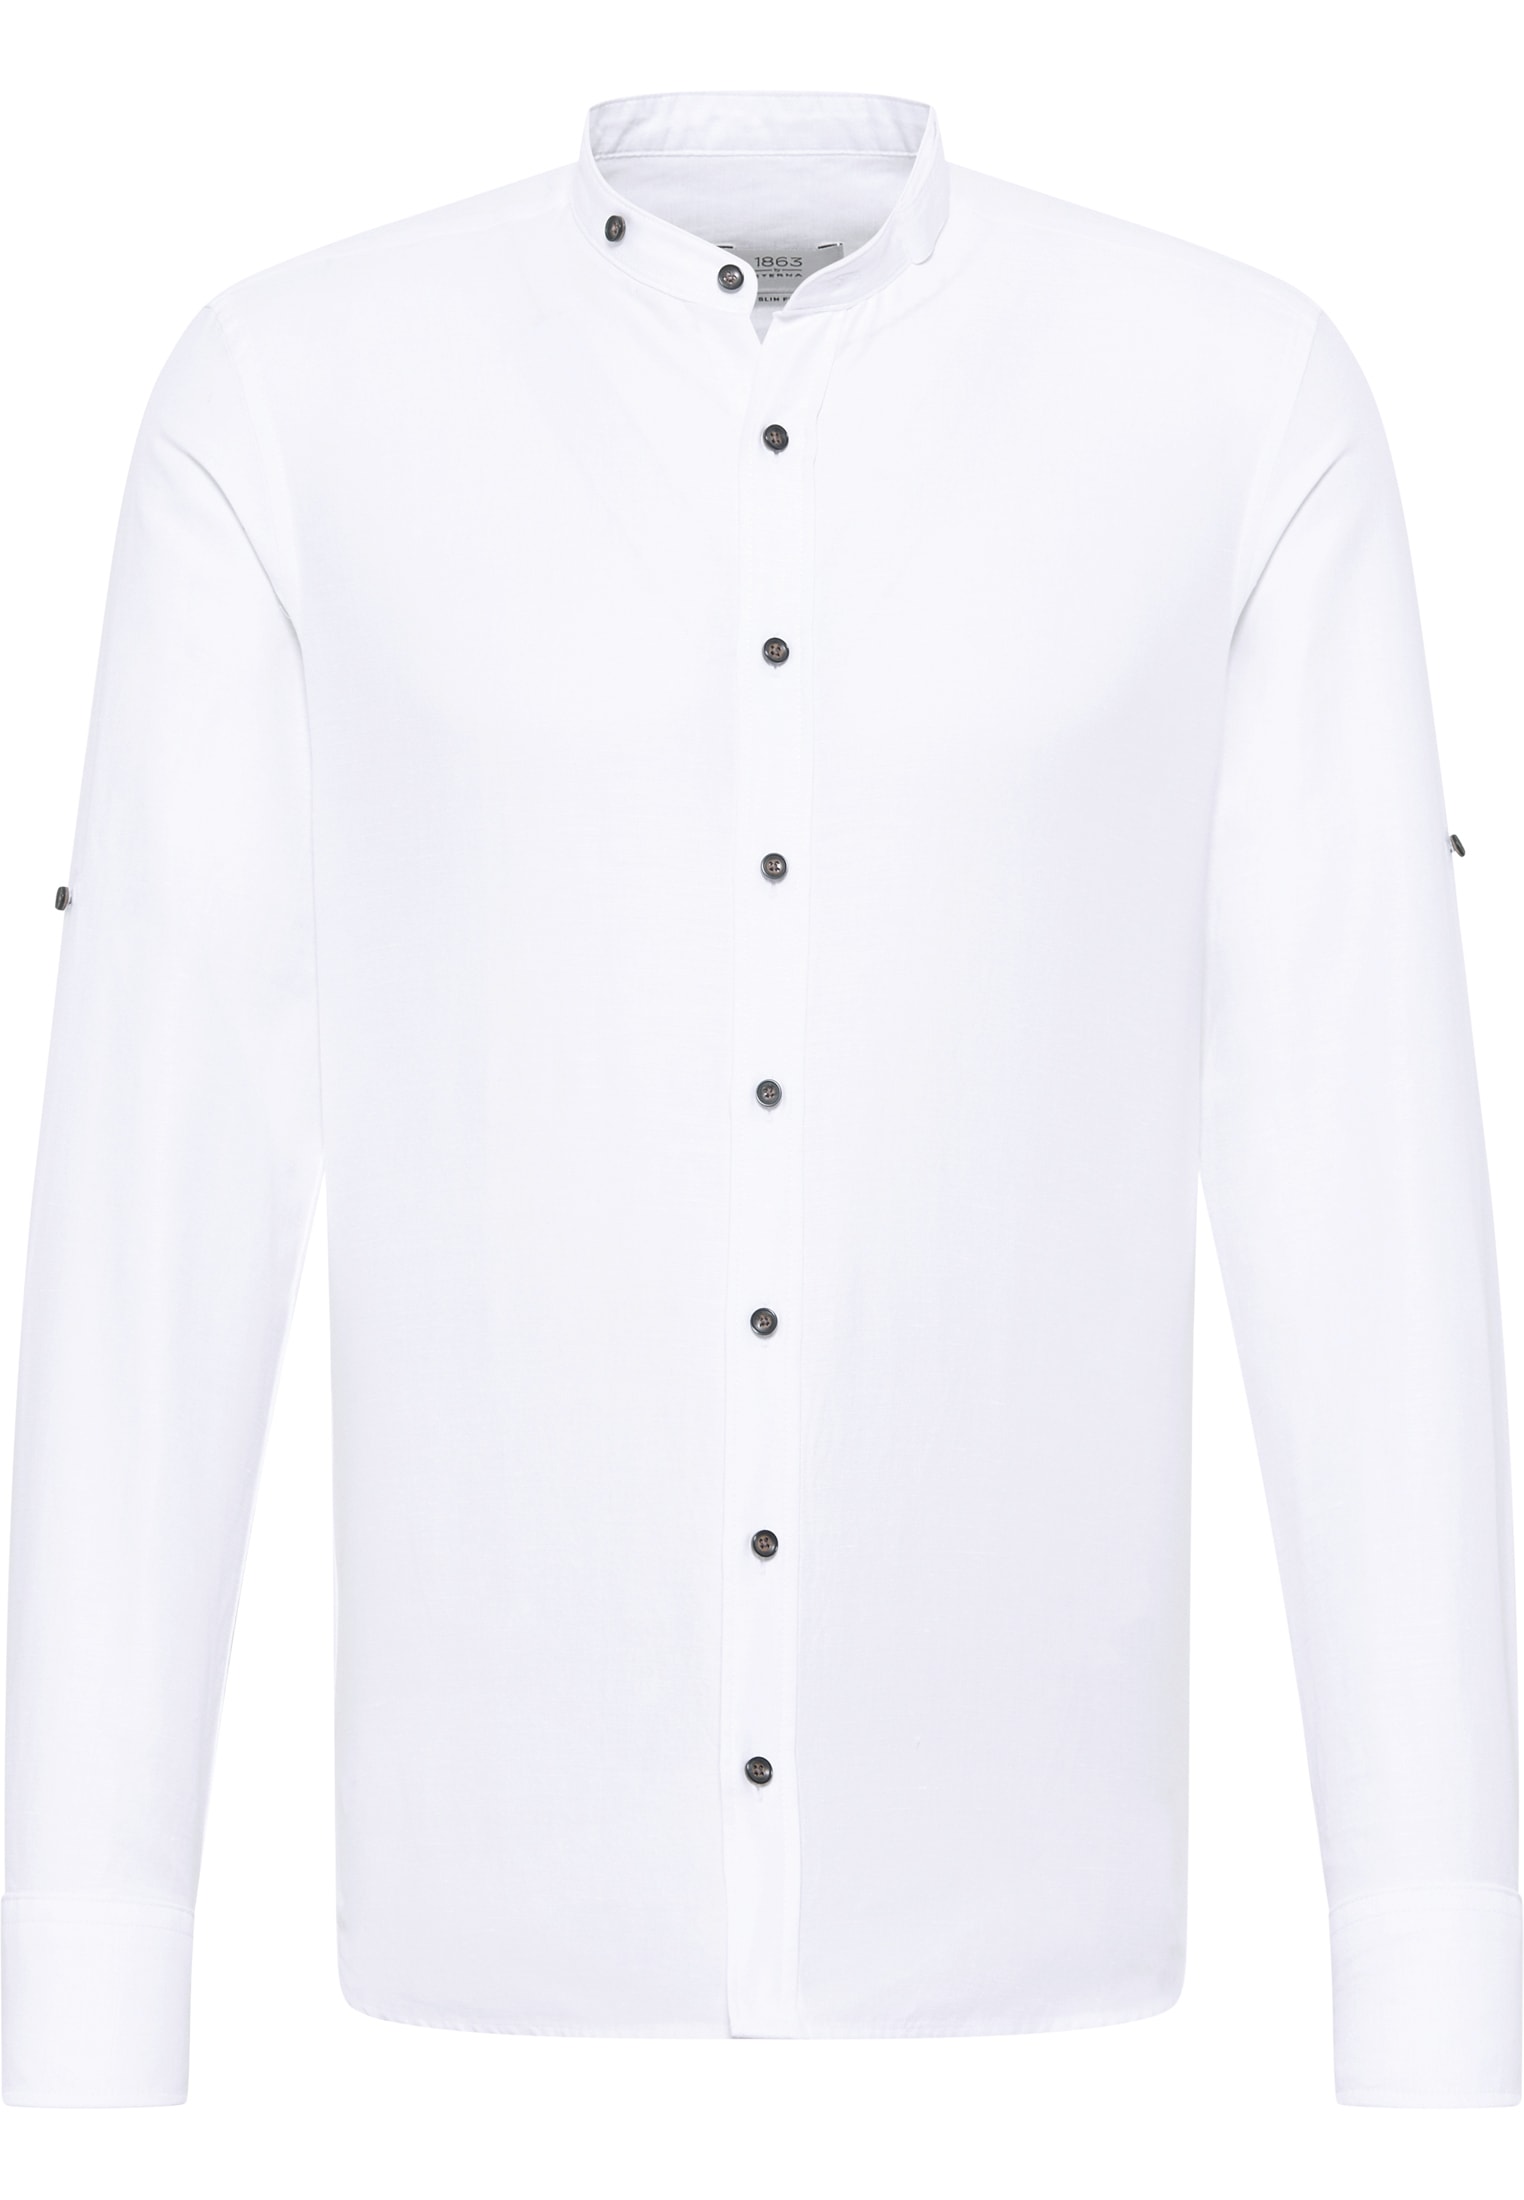 SLIM FIT Linen Shirt in weiß unifarben | weiß | 40 | Langarm |  1SH12593-00-01-40-1/1